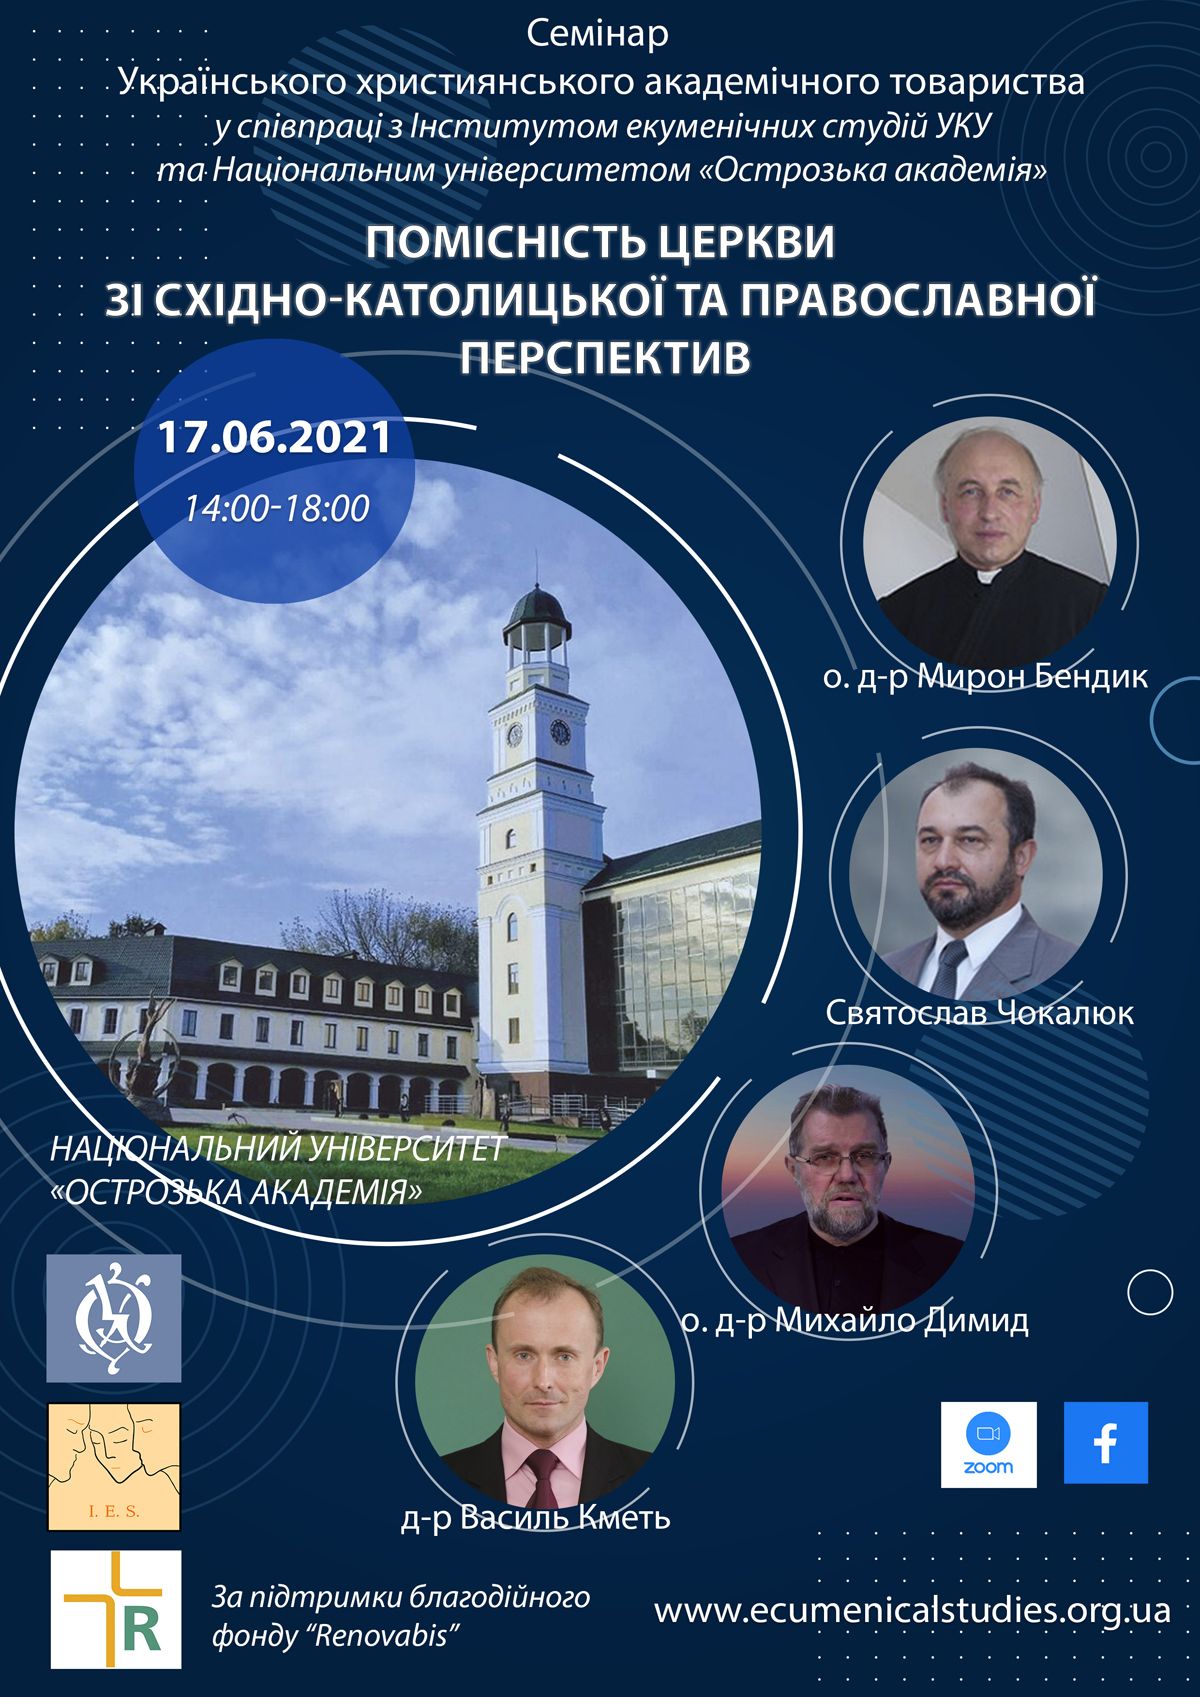 Українське християнське академічне товариство проведе семінар про помісність Церкви - фото 74075